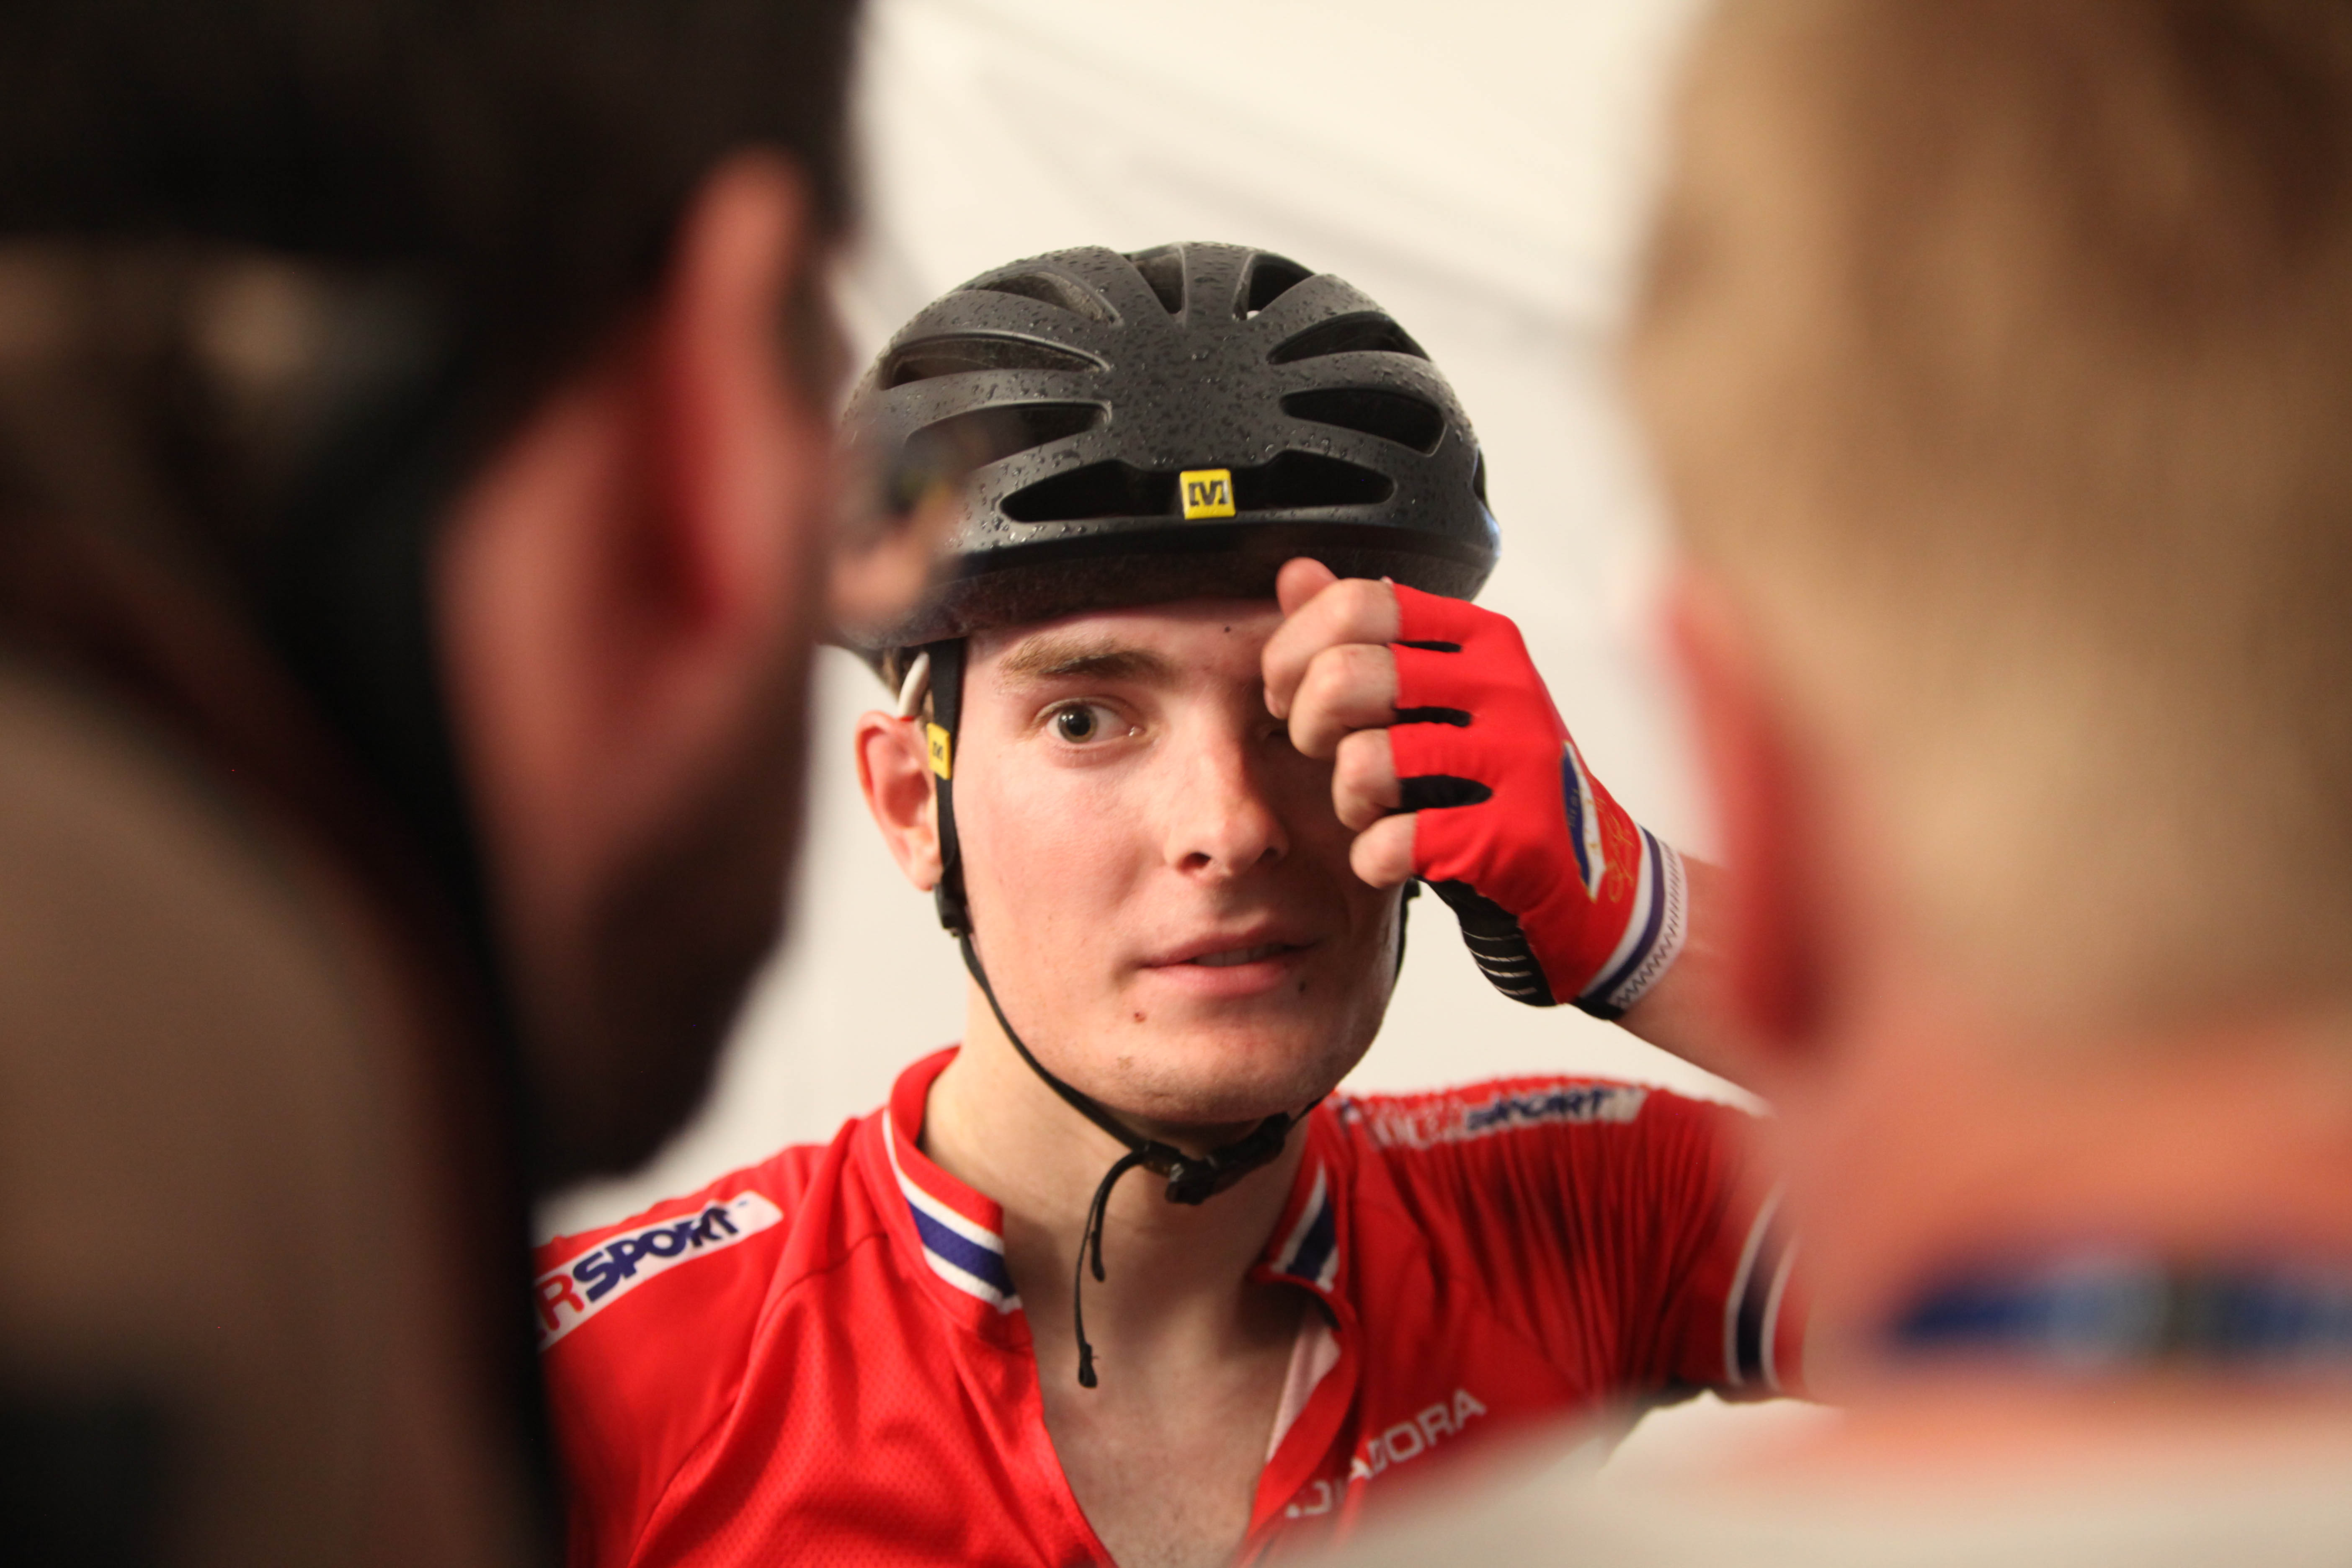 Erfaren syklist: Markus Hoelgaard er godt kjent i sykkelmiljøet hvor han har syklet for henholdsvis Quick-Steps utviklingslag, Team Coop, og nå senest Joker Icopal. 22-åringen har også flere opptredener på landslaget. Foto: Sykkelmagasinet